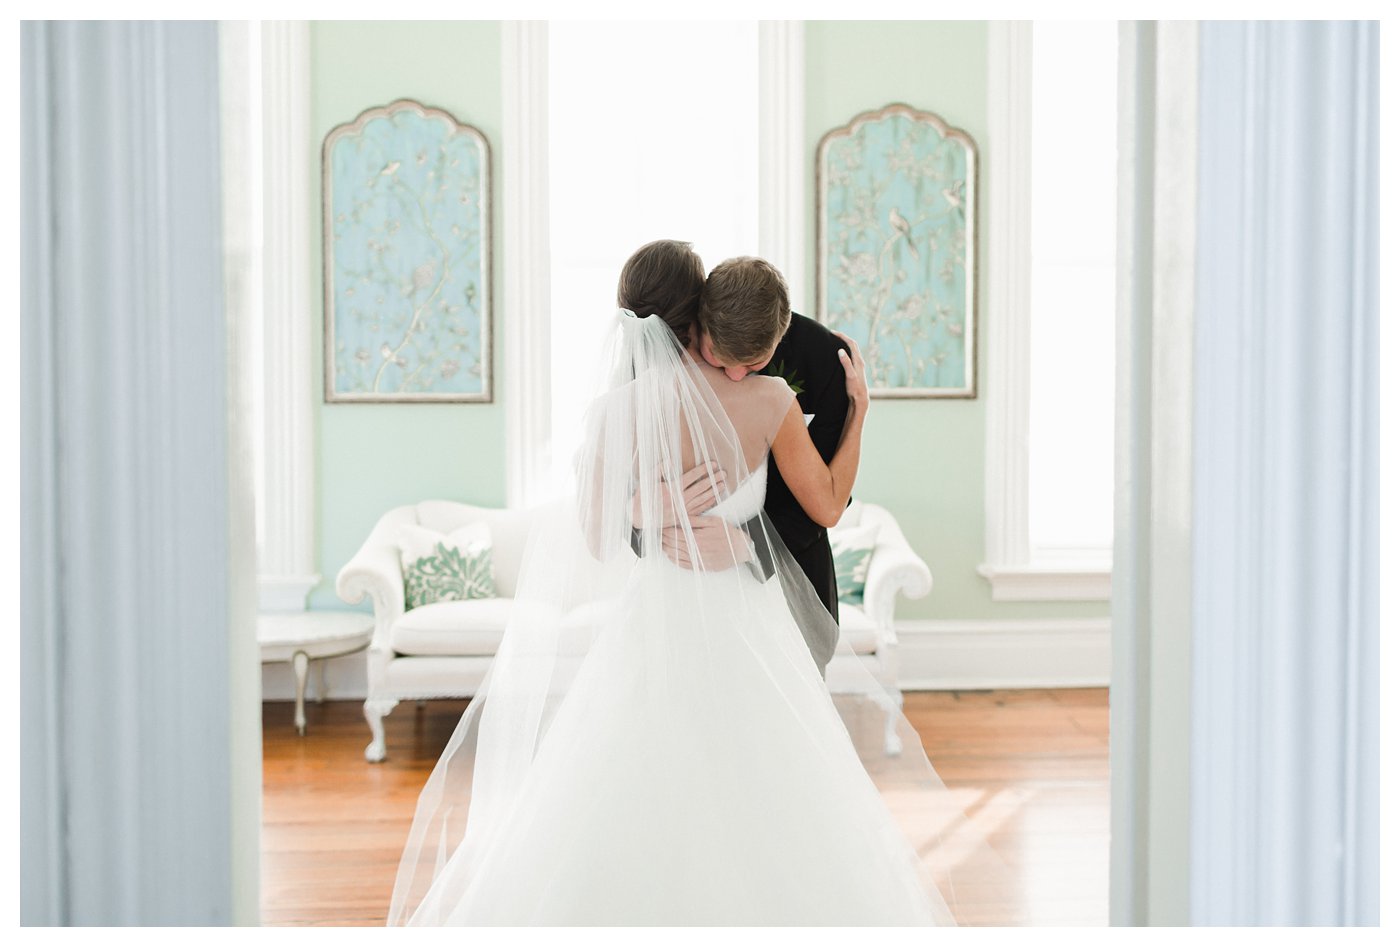 Merrimon-Wynne Wedding Photography by Amanda and Grady